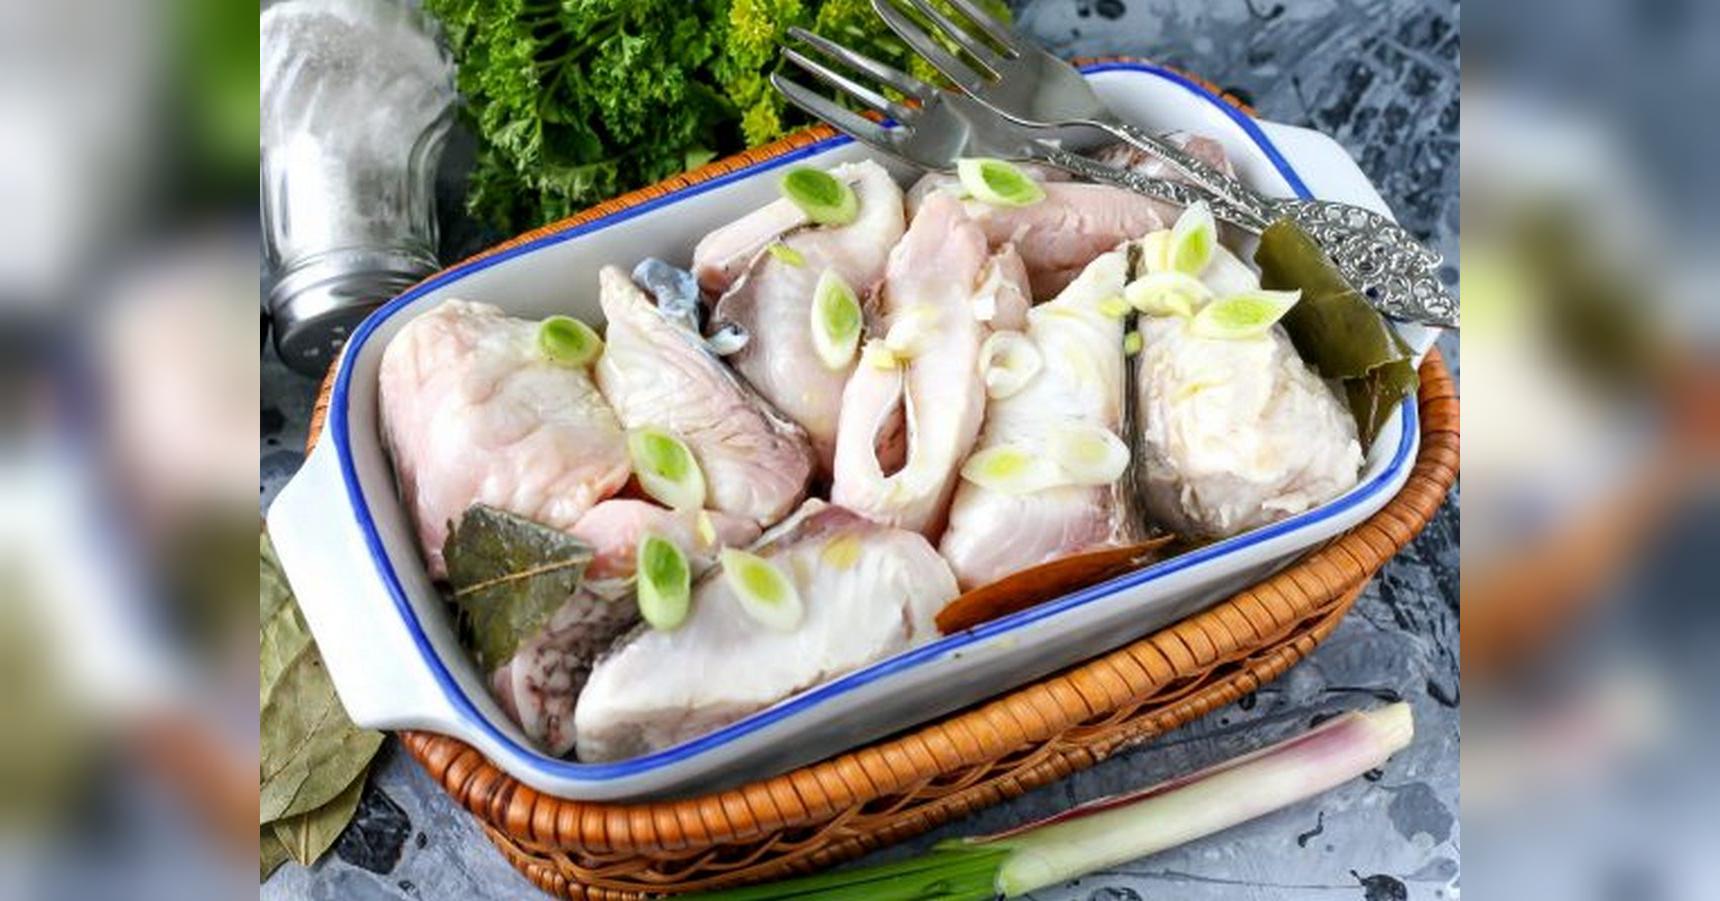 Рыба для суши и роллов. Какую рыбу используют и как ее приготовить?